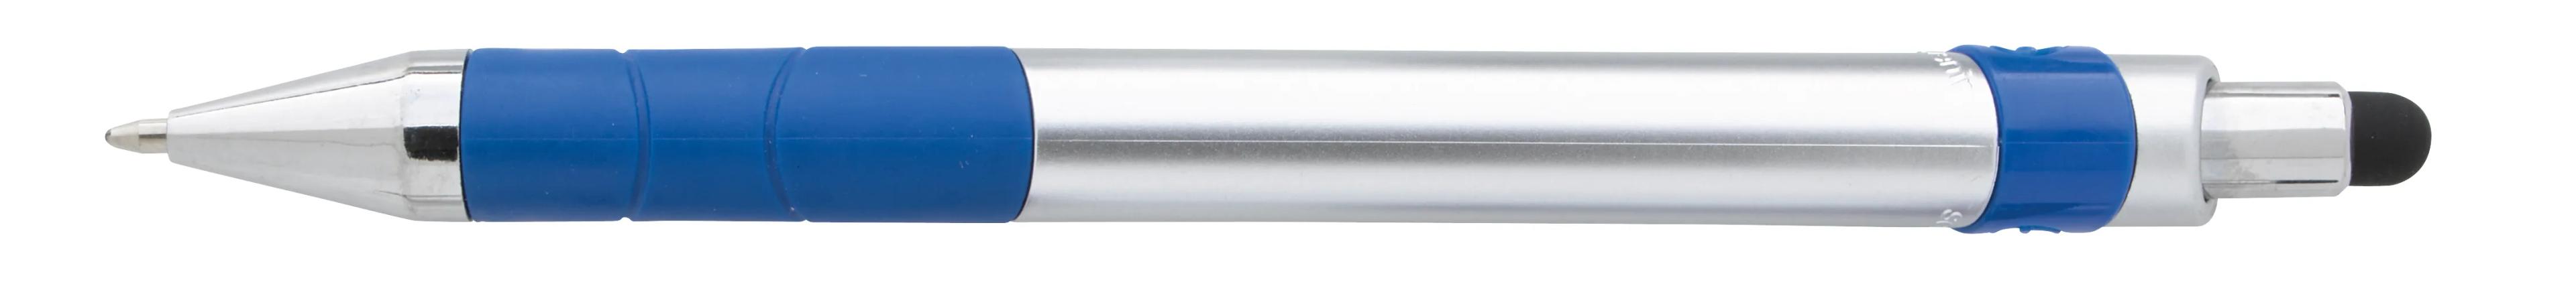 Souvenir® Rize Stylus Pen 7 of 28